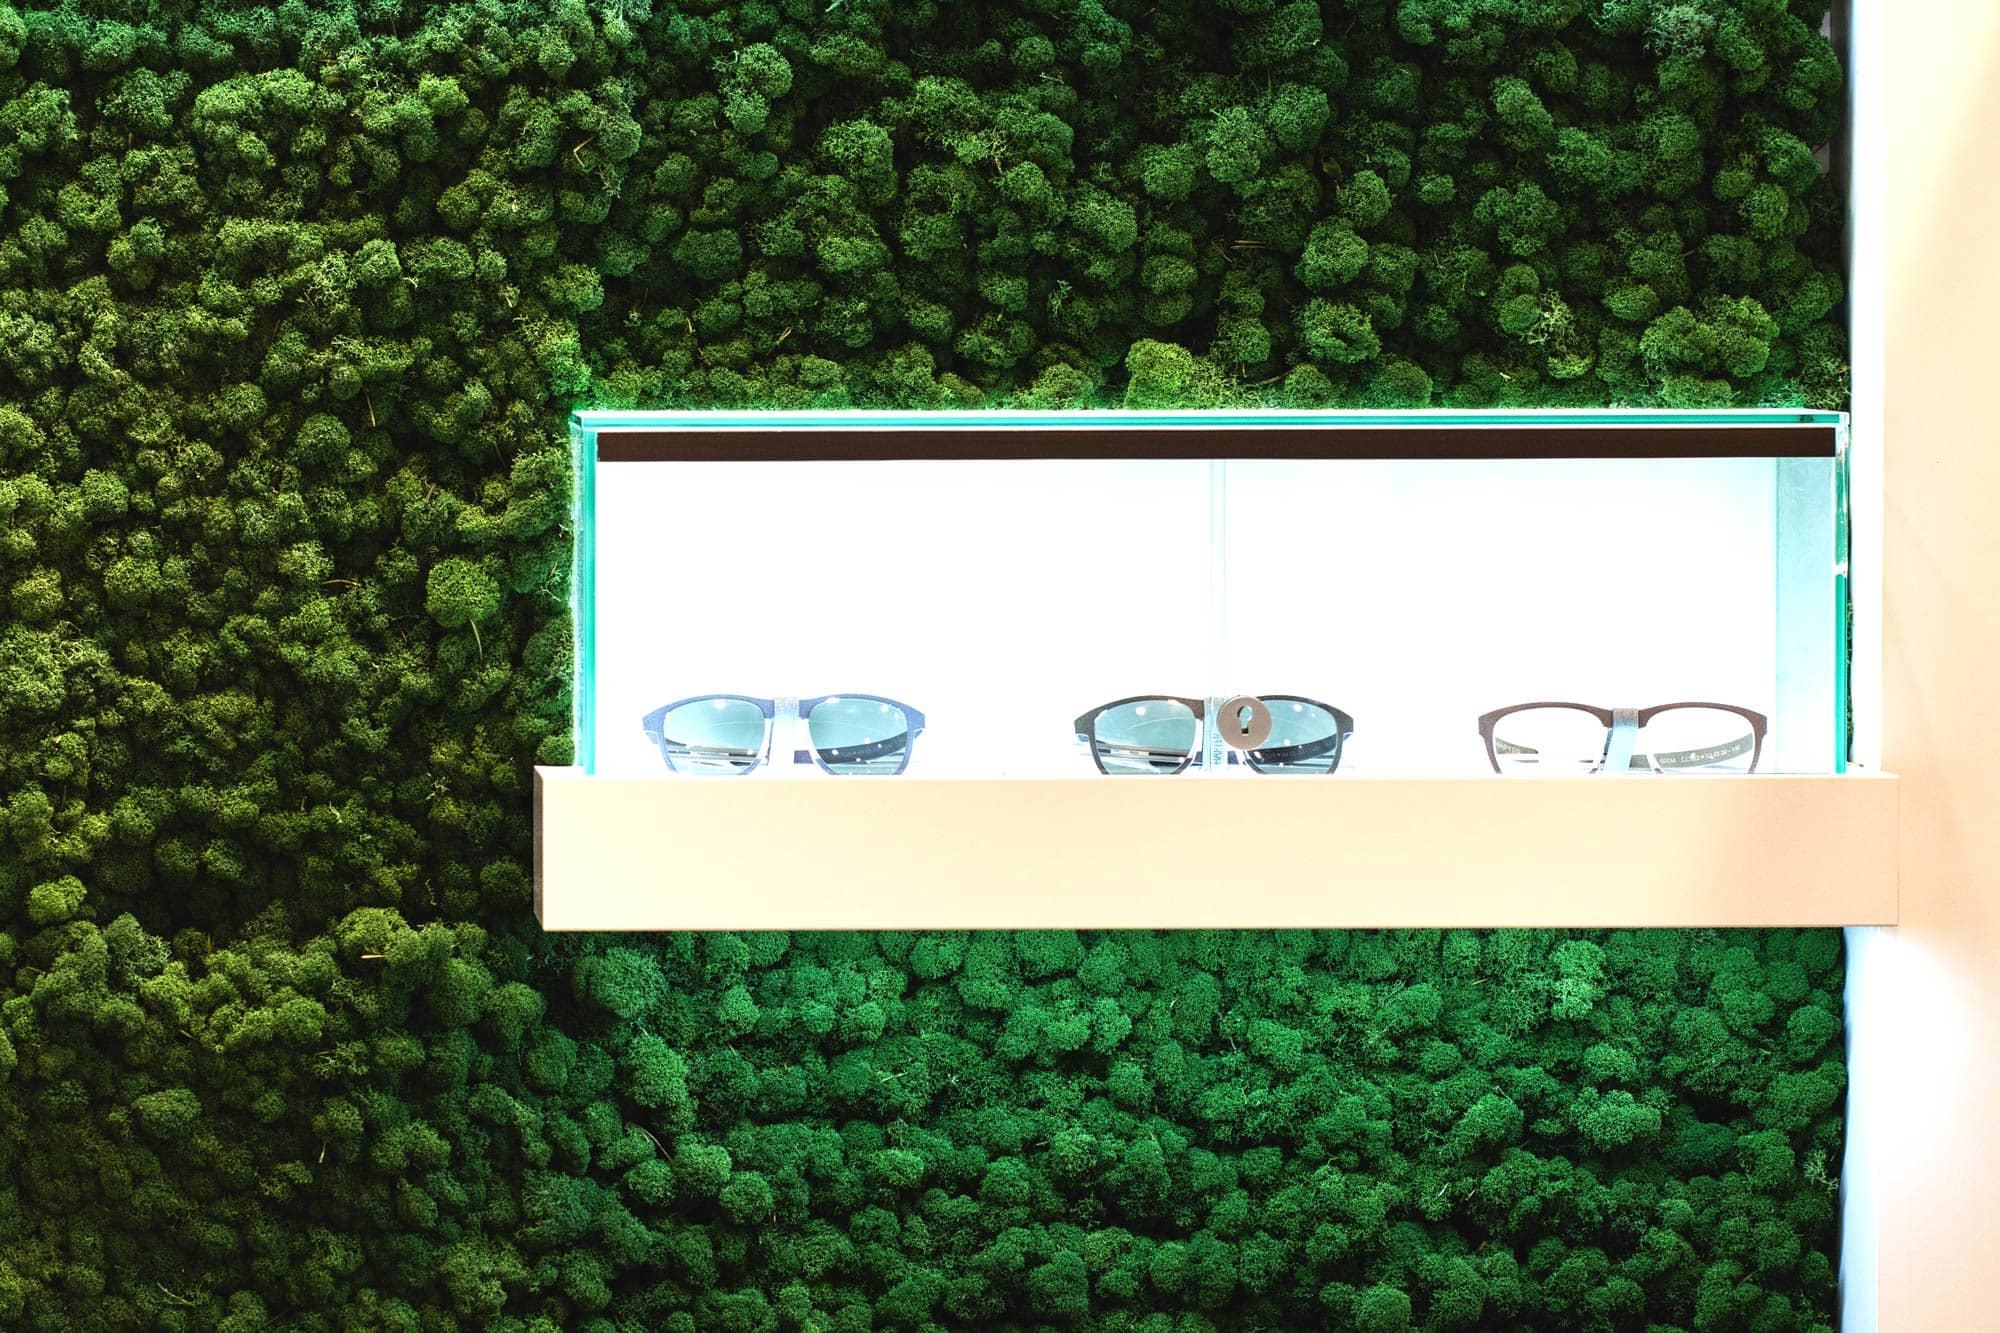 Brillen von der Mooswand gibt es bei Optik Sagawe im Rostocker Hof in Rostock in der Kröpeliner Strasse 26-28